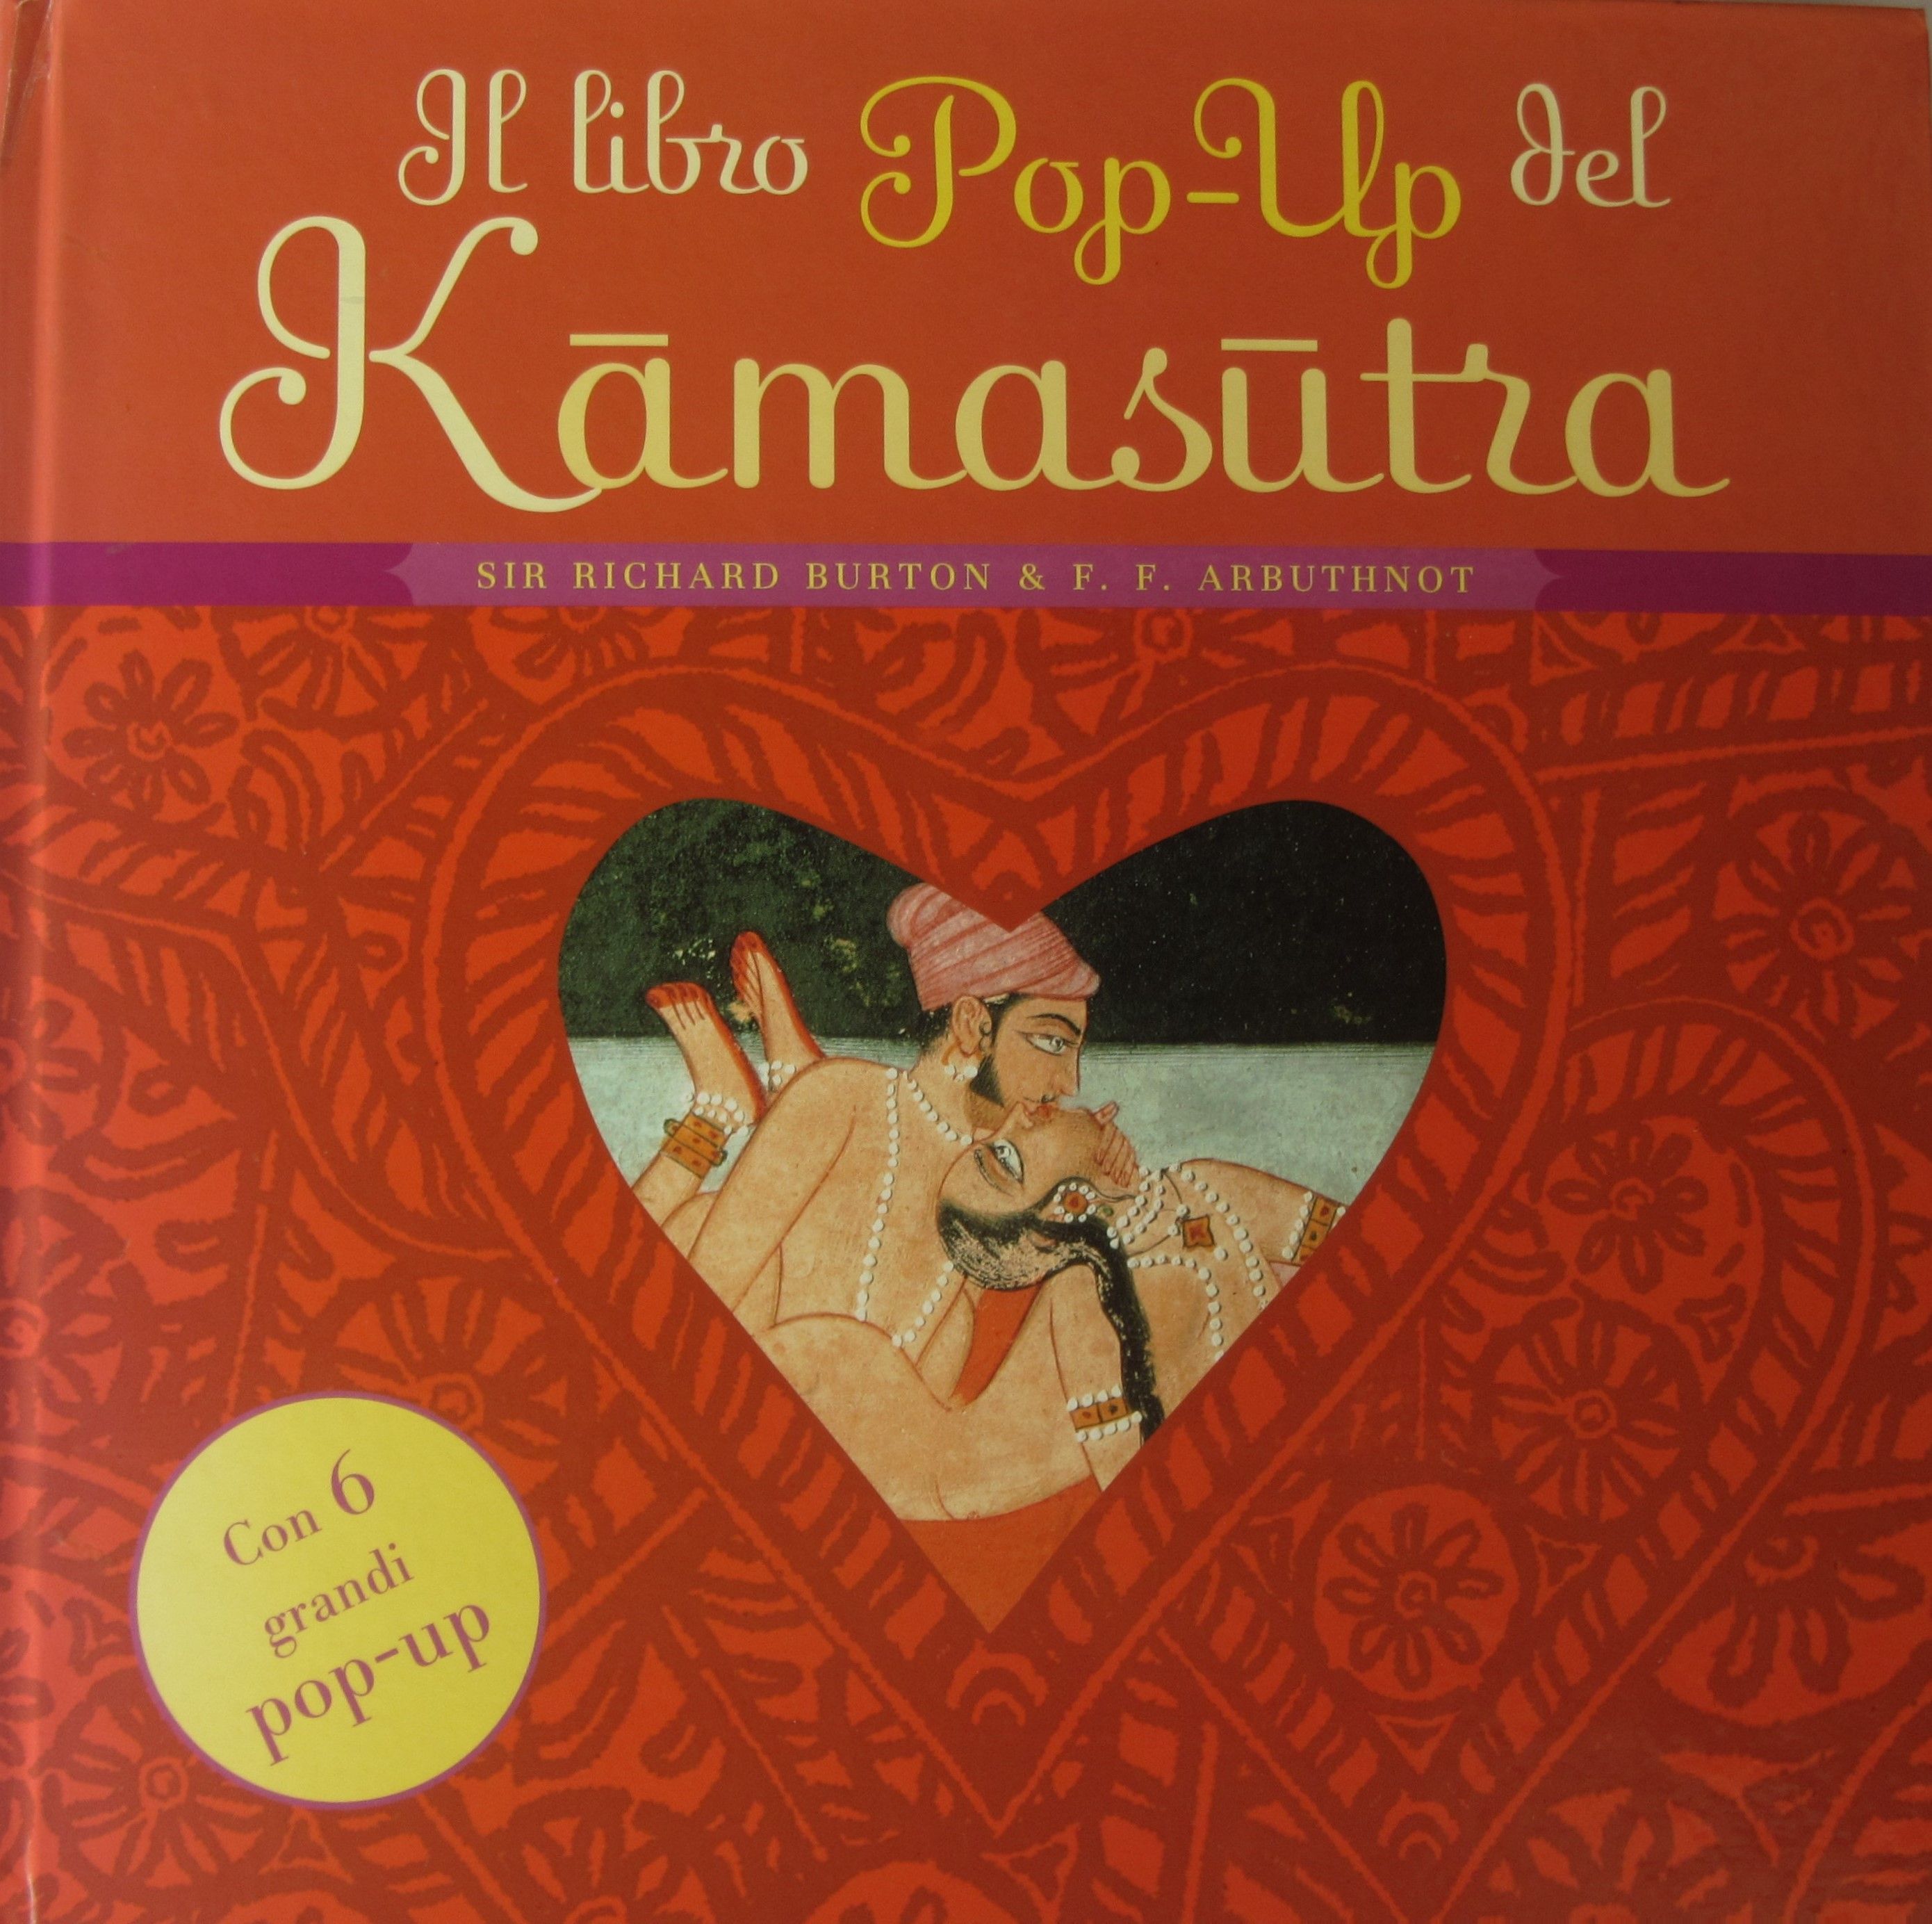 Protetto: Il Kamasutra: tra pop-up e “libri da comodino” [password: kamasutra]